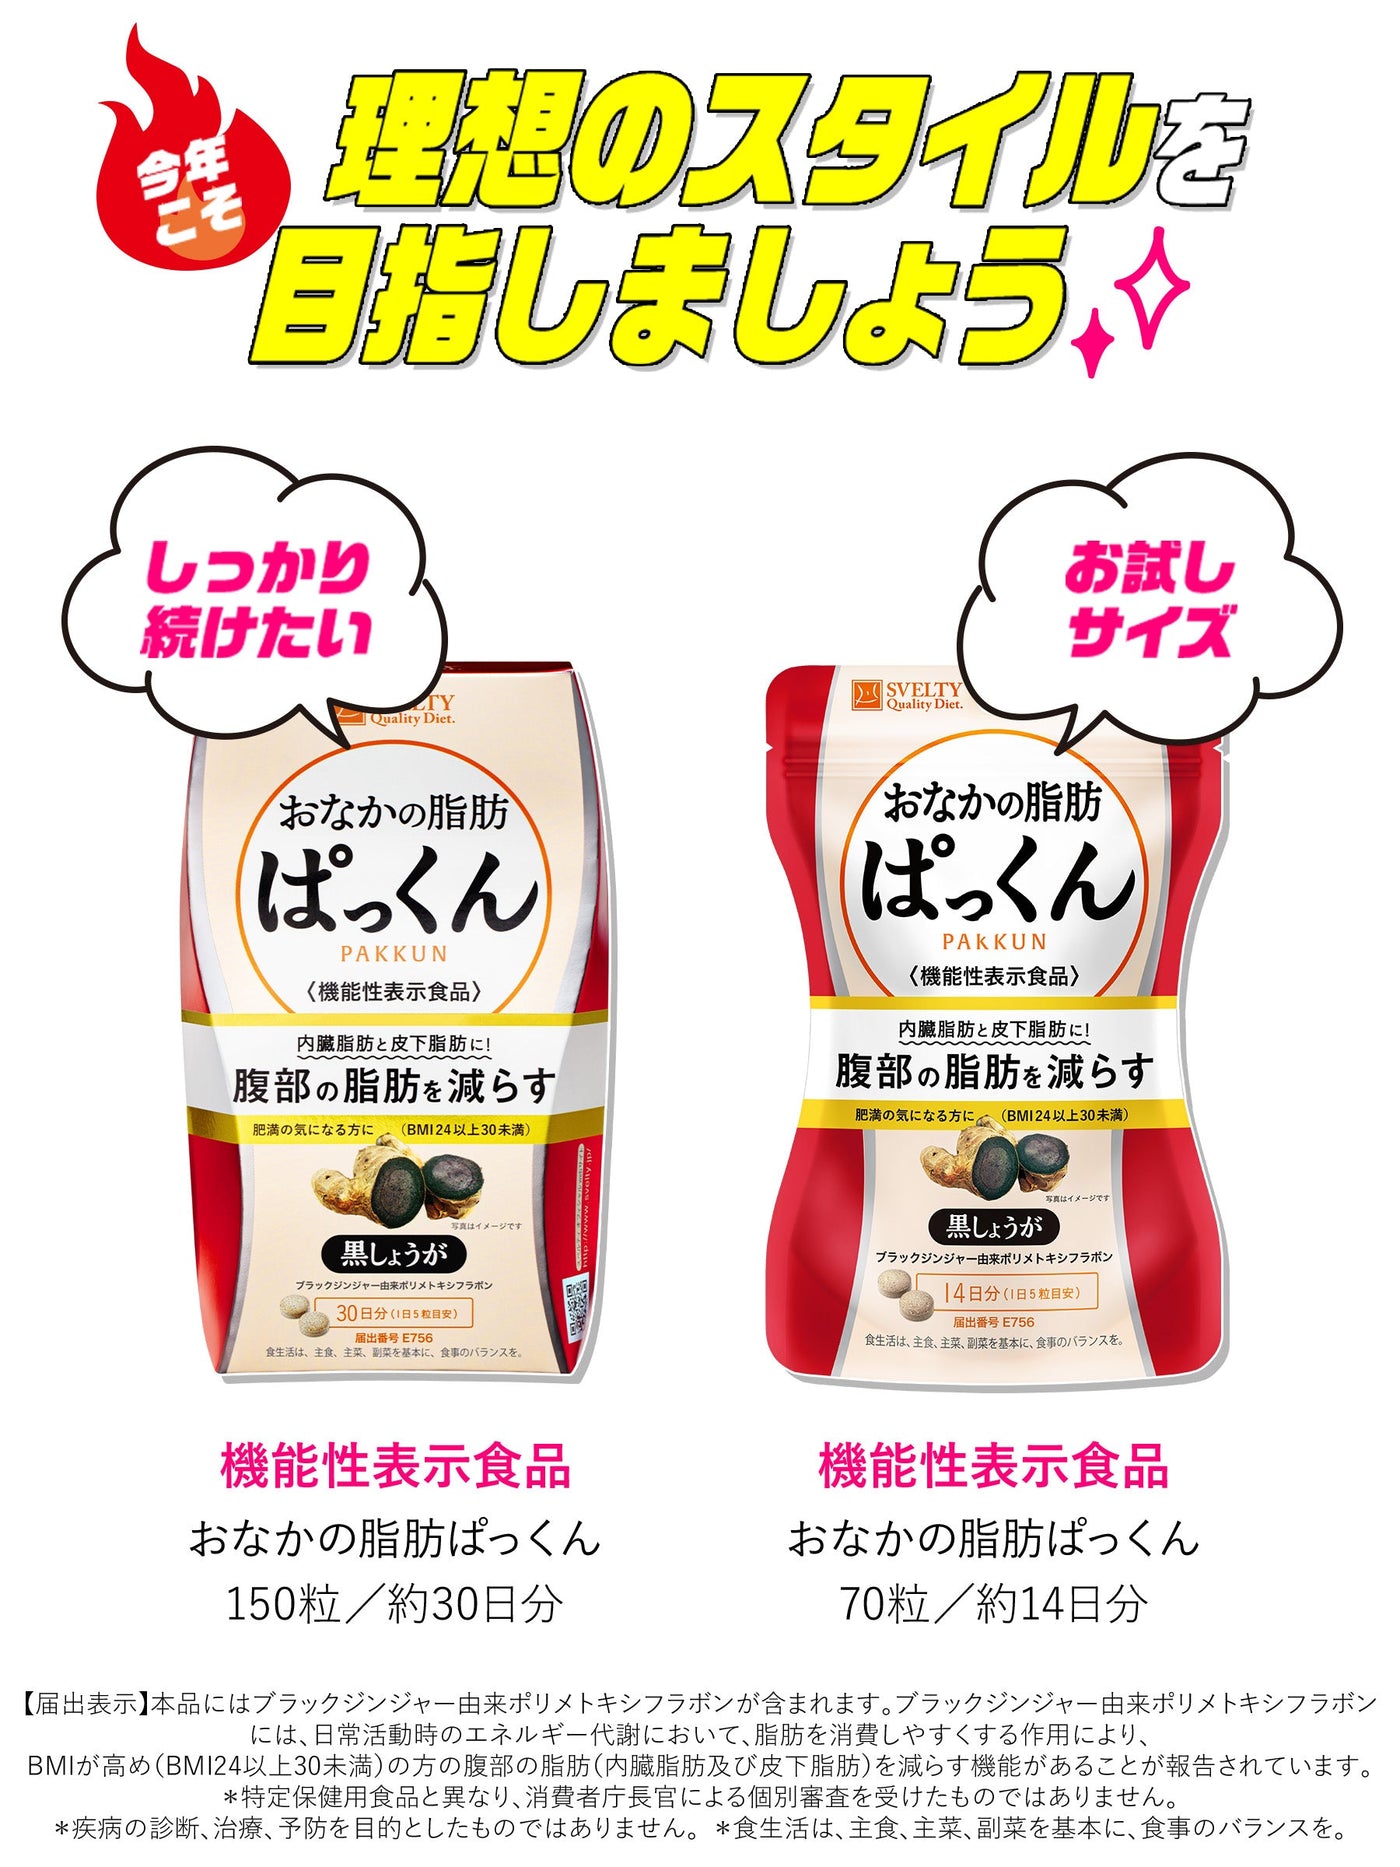 【オリジナルケース付】おなかの脂肪ぱっくん 機能性表示食品  サプリメント 黒しょうが パックマンコラボ スベルティ 150粒